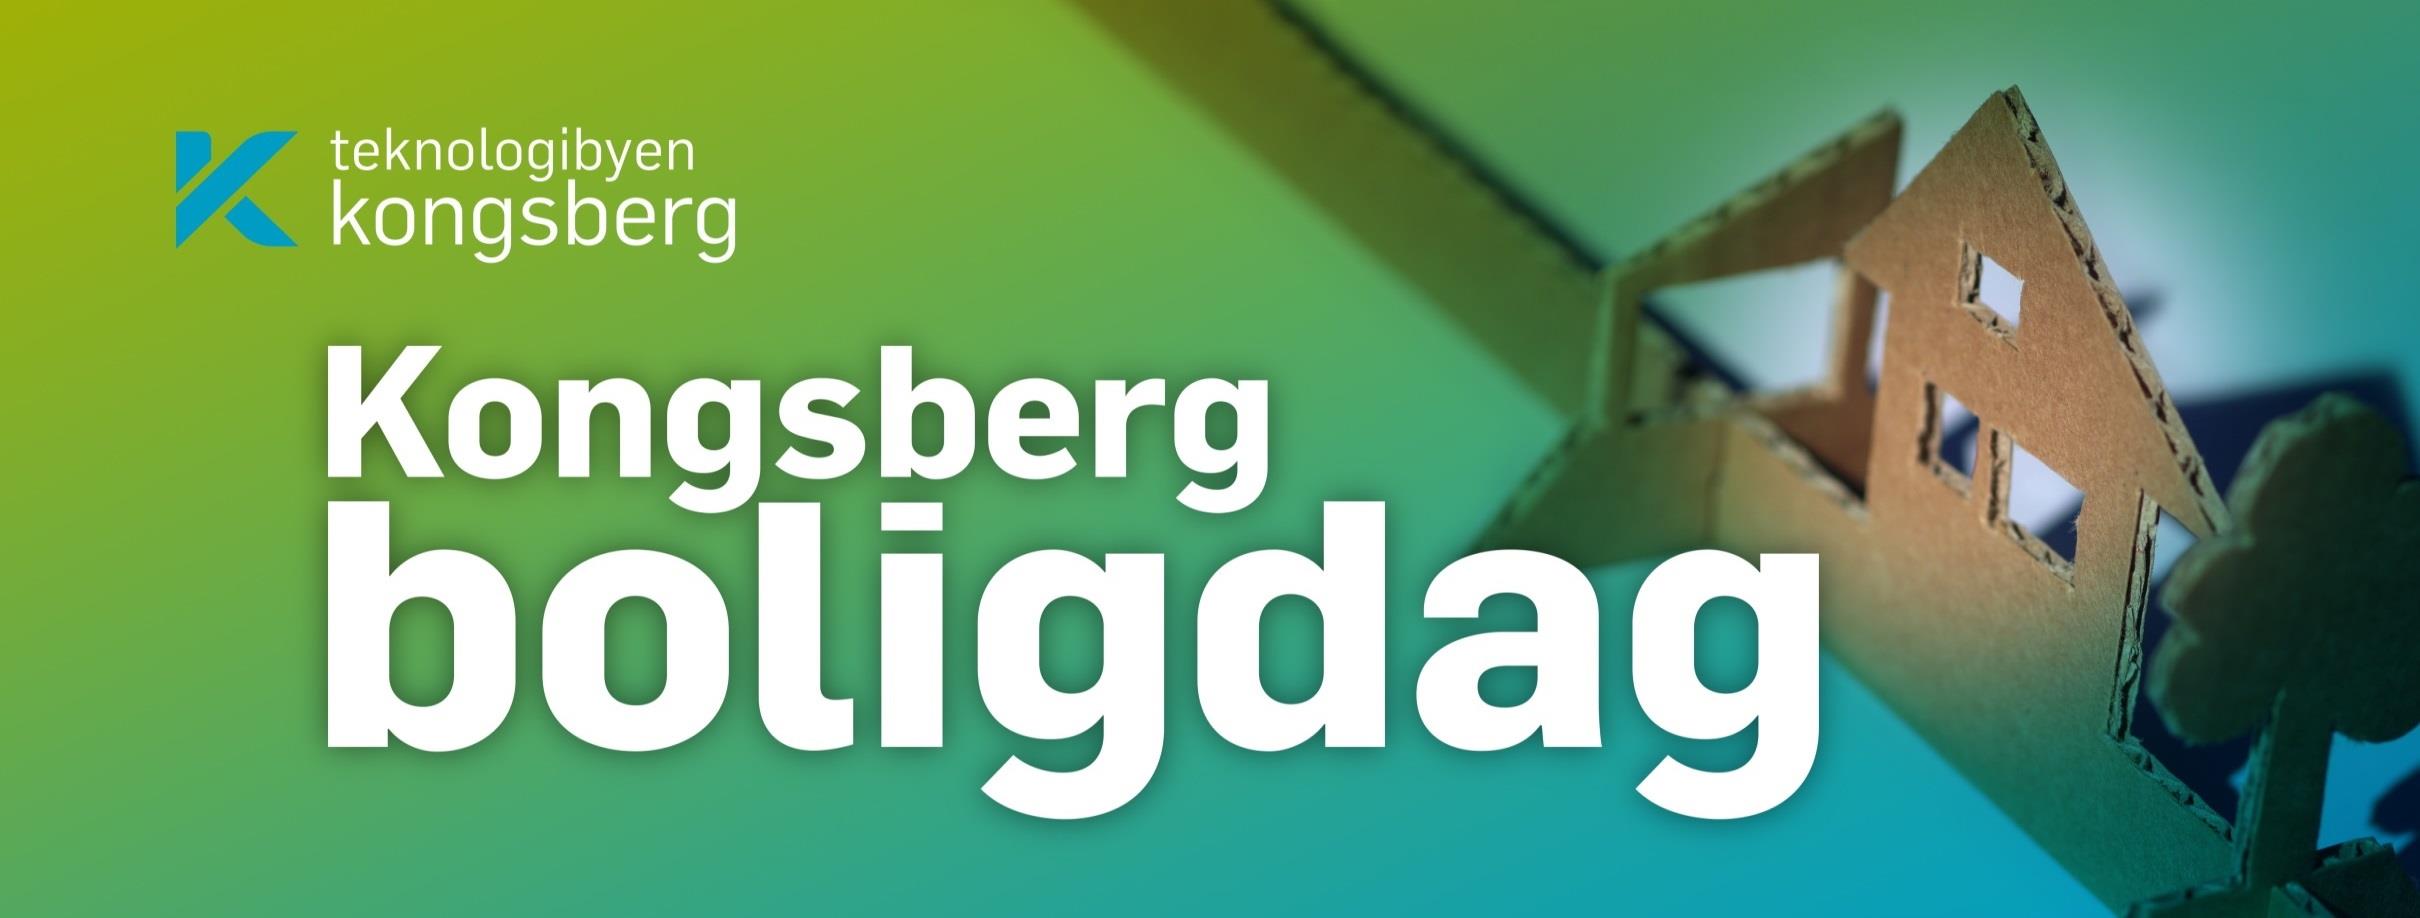 Helhetlig Boligplan for Kongsberg kommune 2014-2018 SAMARBEID MELLOM: UTBYGGERE - HUSBYGGERE EIENDOMSMEGLERE BANKER - ANDRE FINANS-INSTITUSJONER - KONGSBERG NÆRINGSFORUM/NÆRINGSLIVET OG